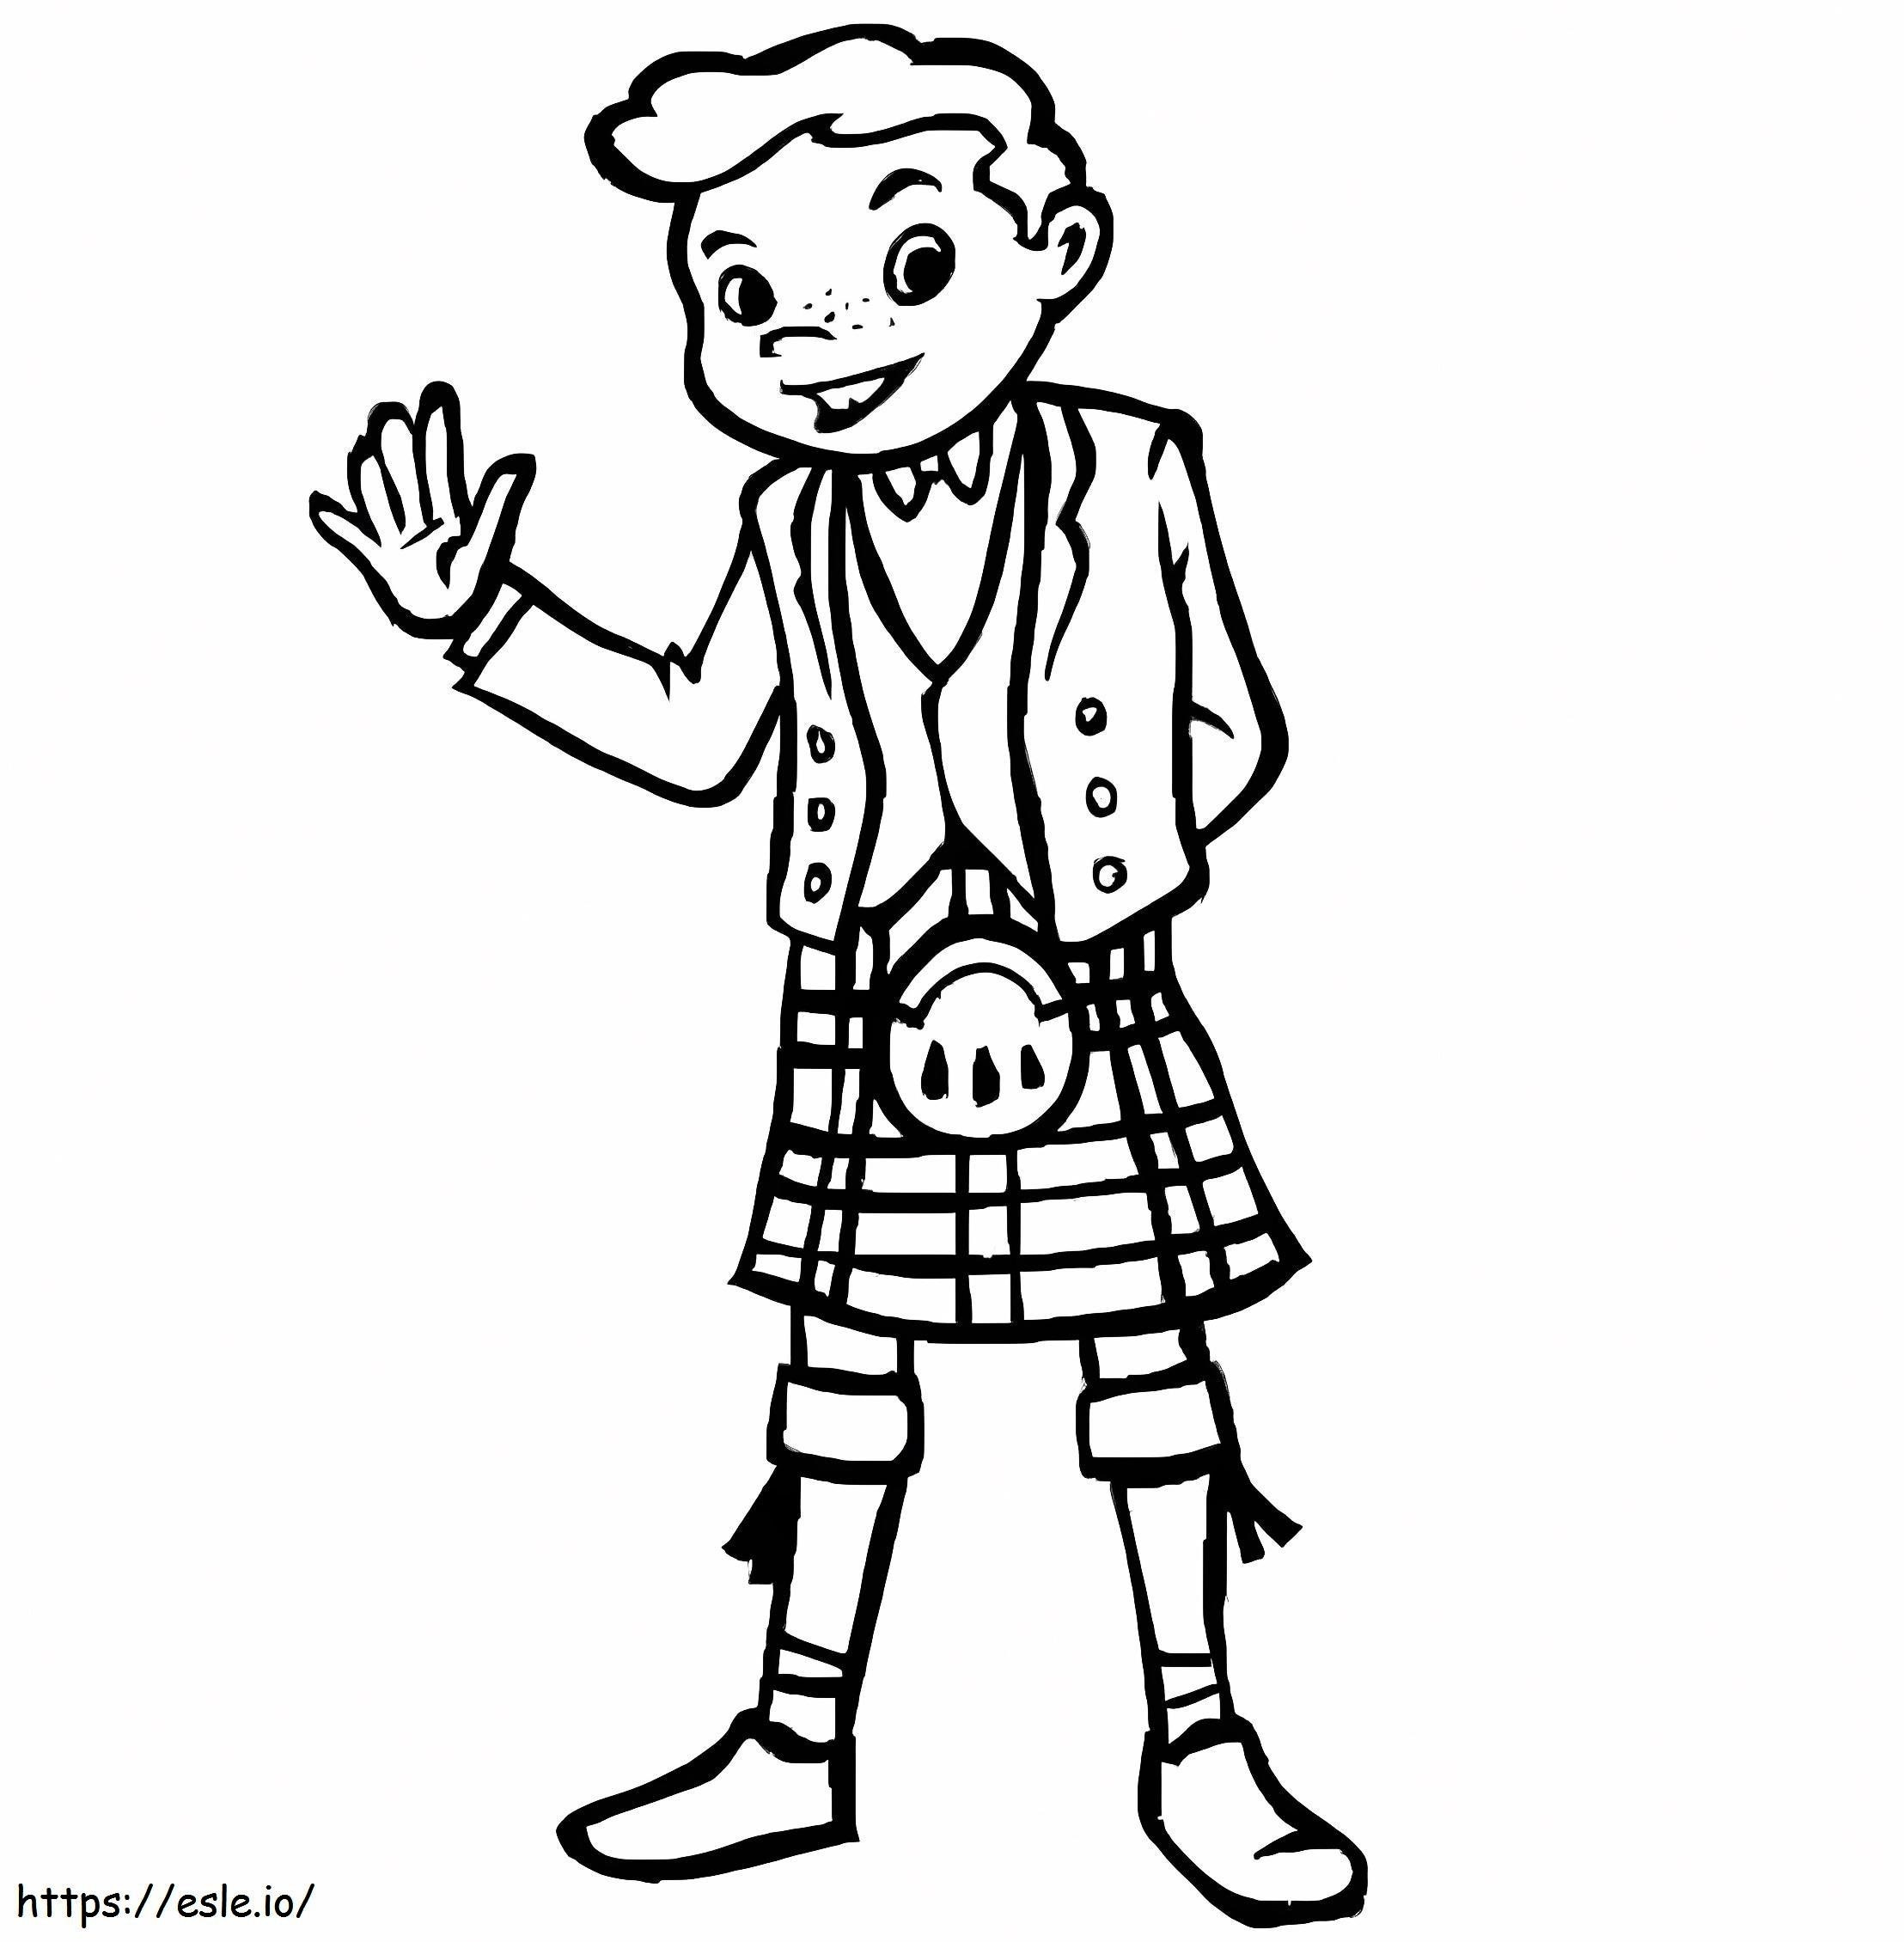 Um menino escocês para colorir